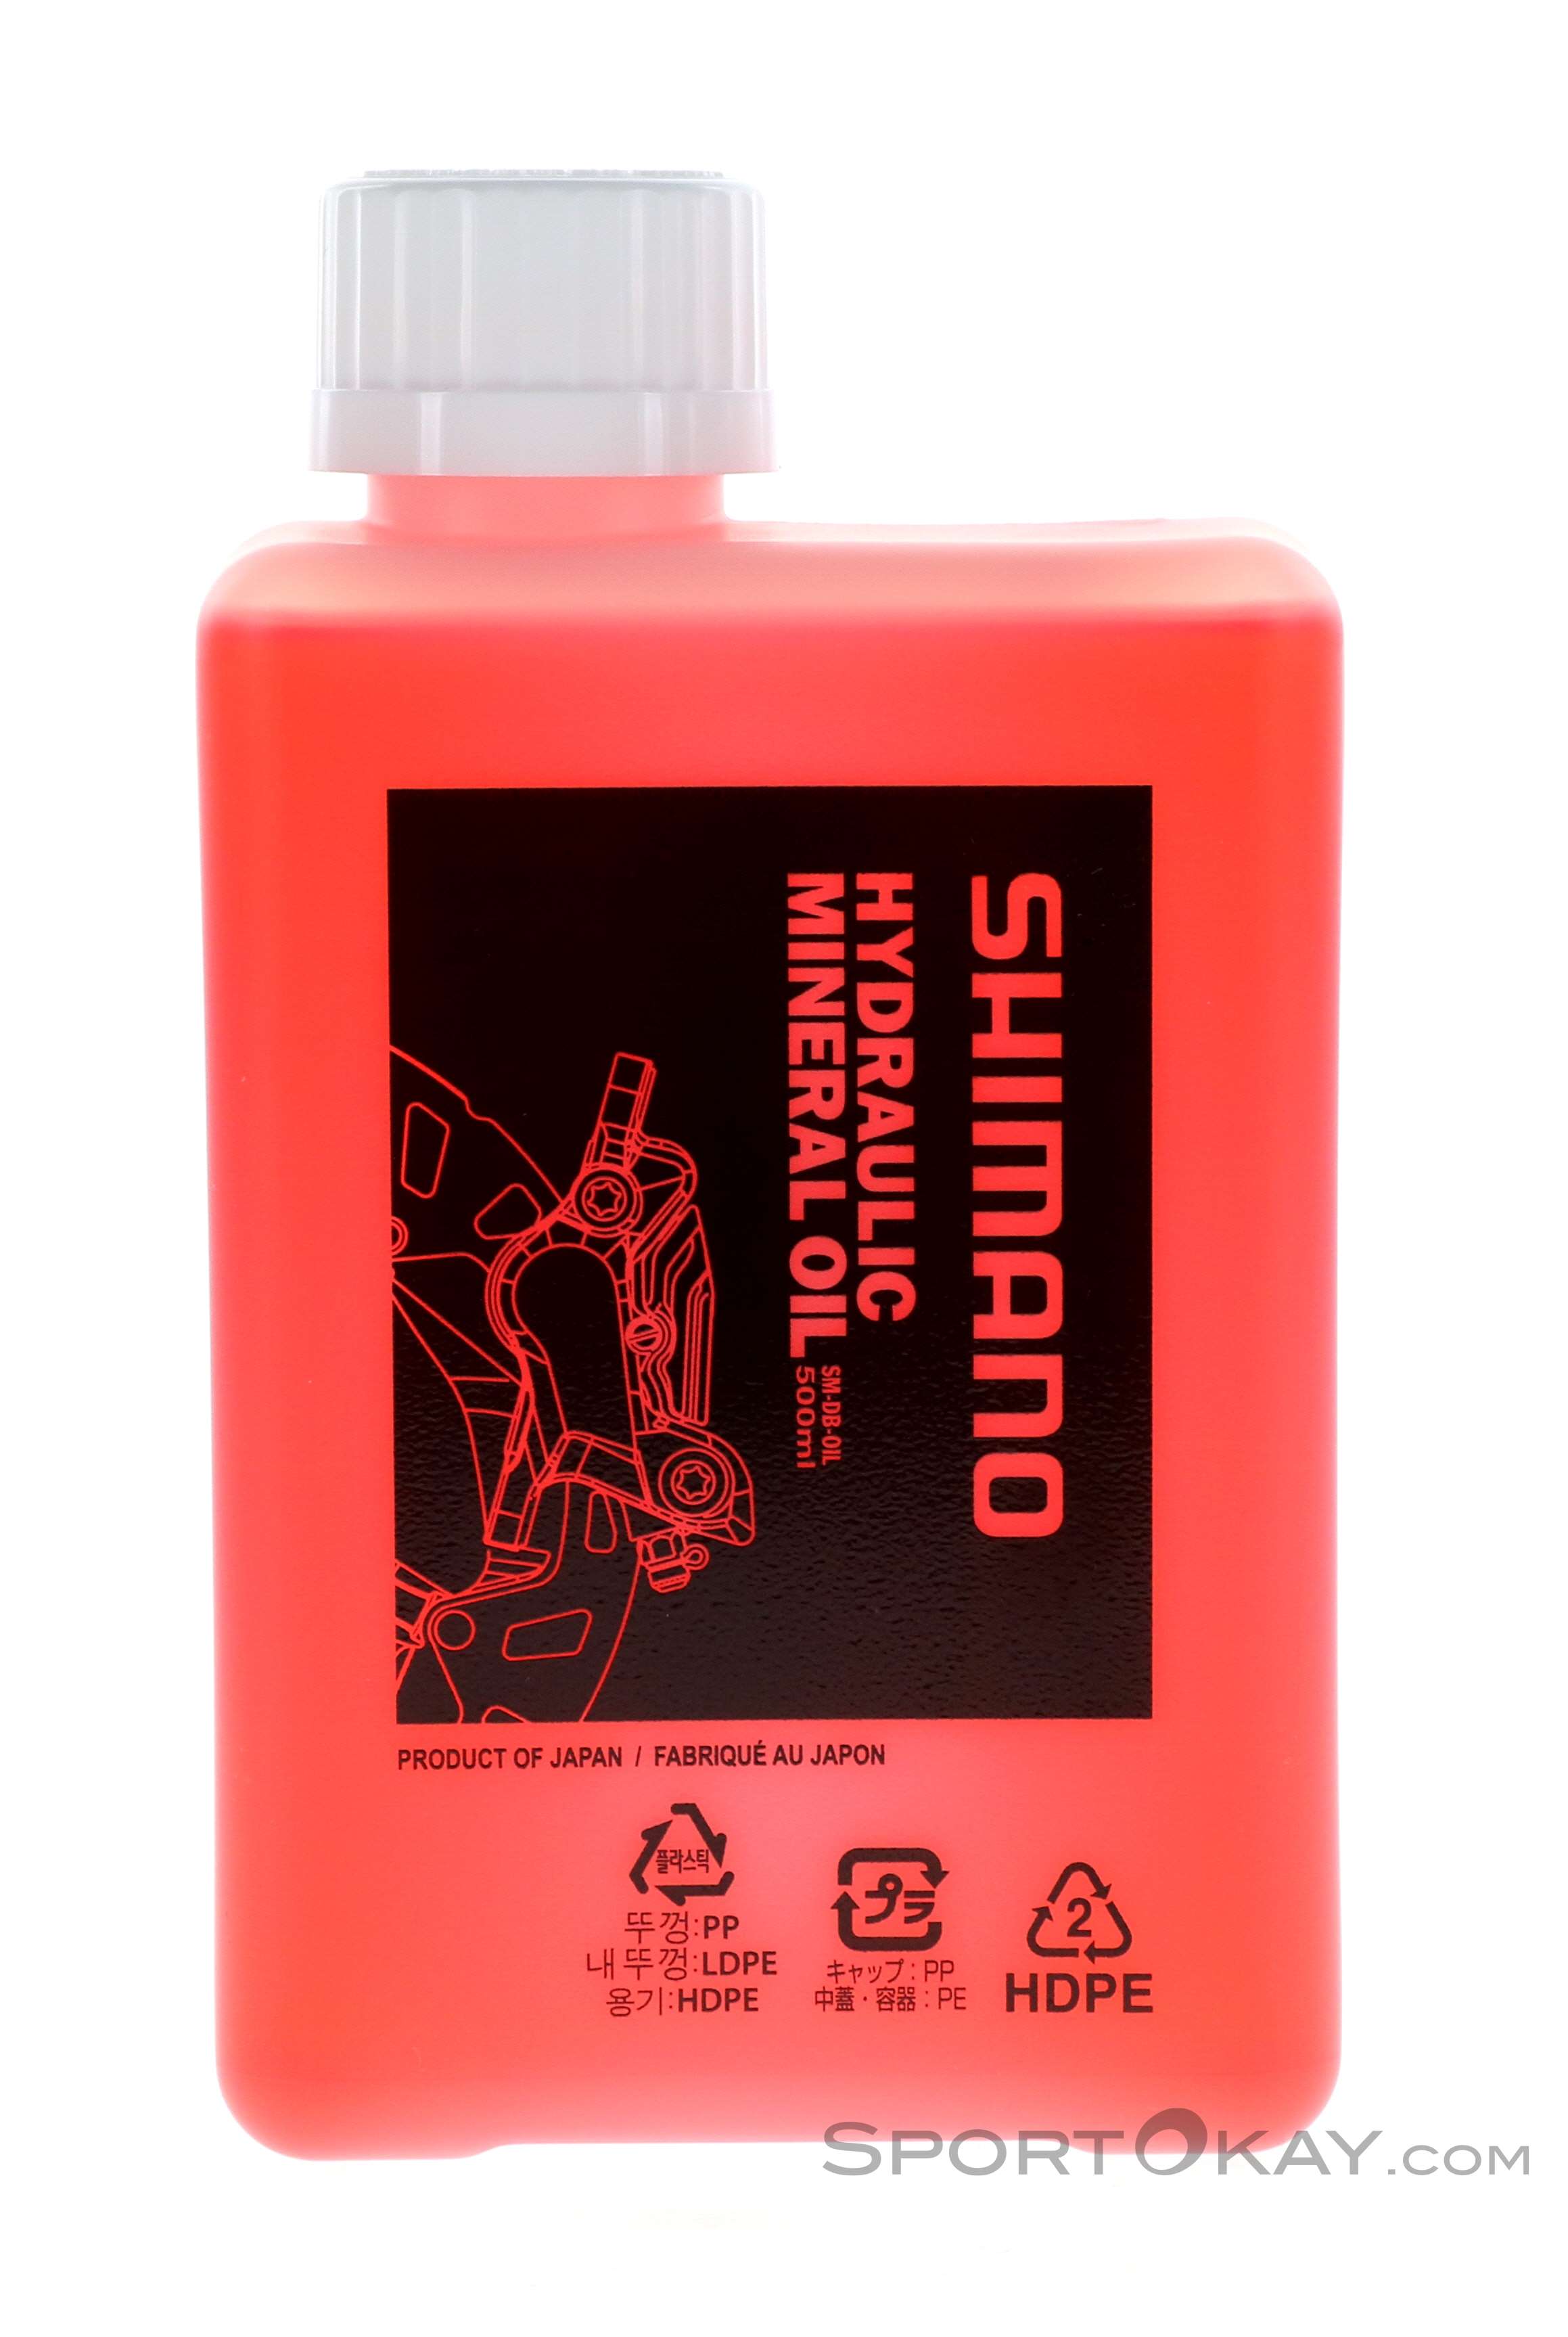 Shimano Mineralöl 500ml Líquido de frenos - % SALE - Todos